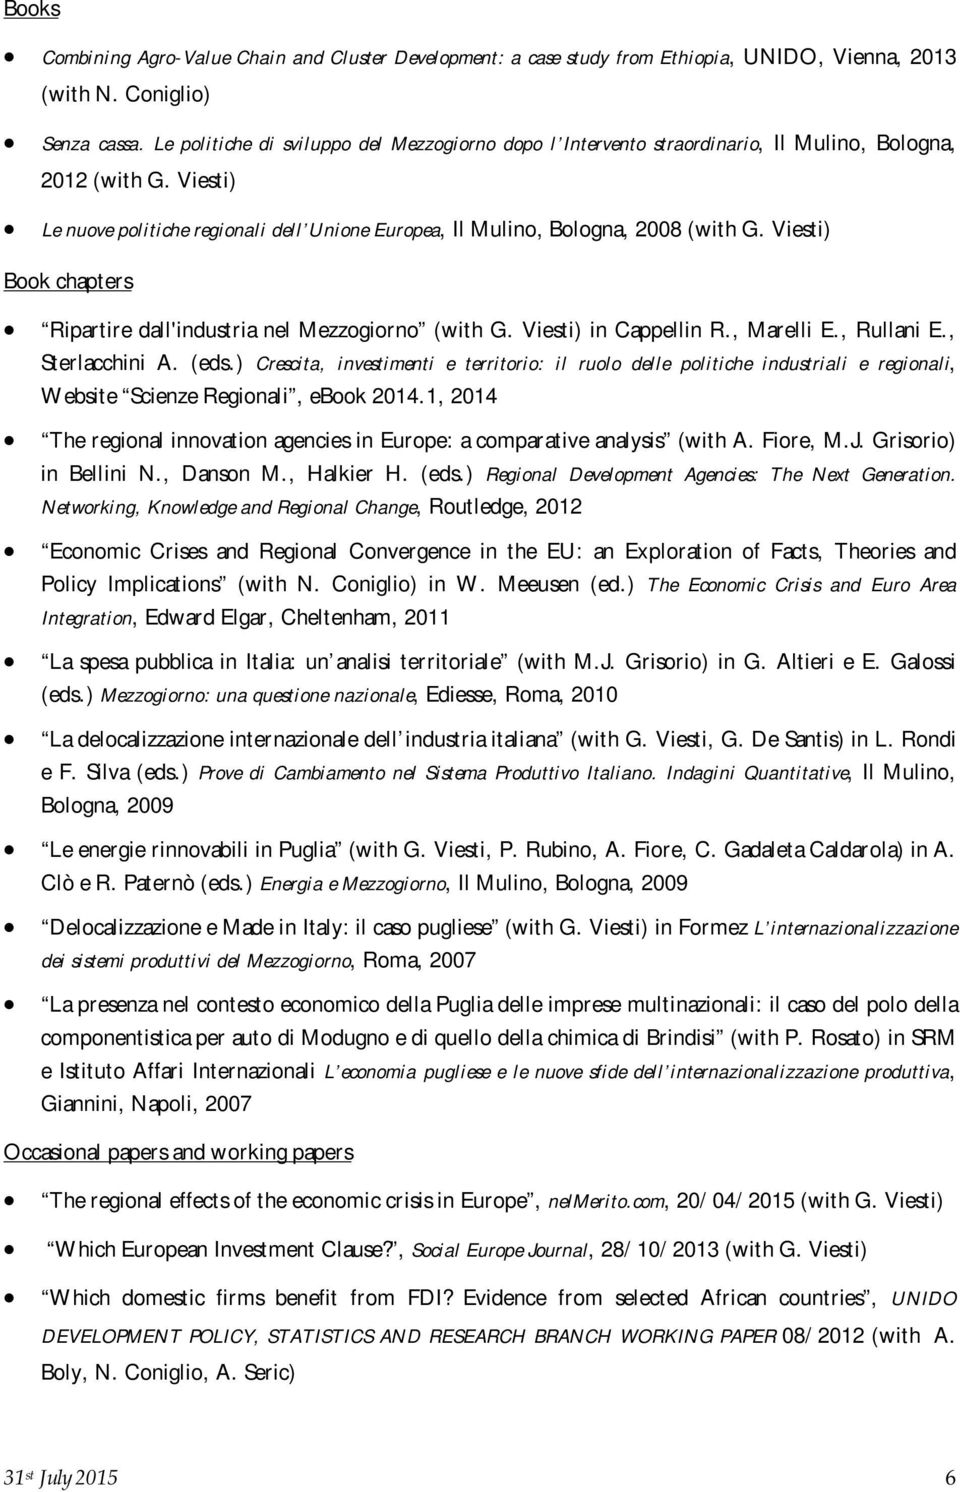 Viesti) Book chapters Ripartire dall'industria nel Mezzogiorno (with G. Viesti) in Cappellin R., Marelli E., Rullani E., Sterlacchini A. (eds.